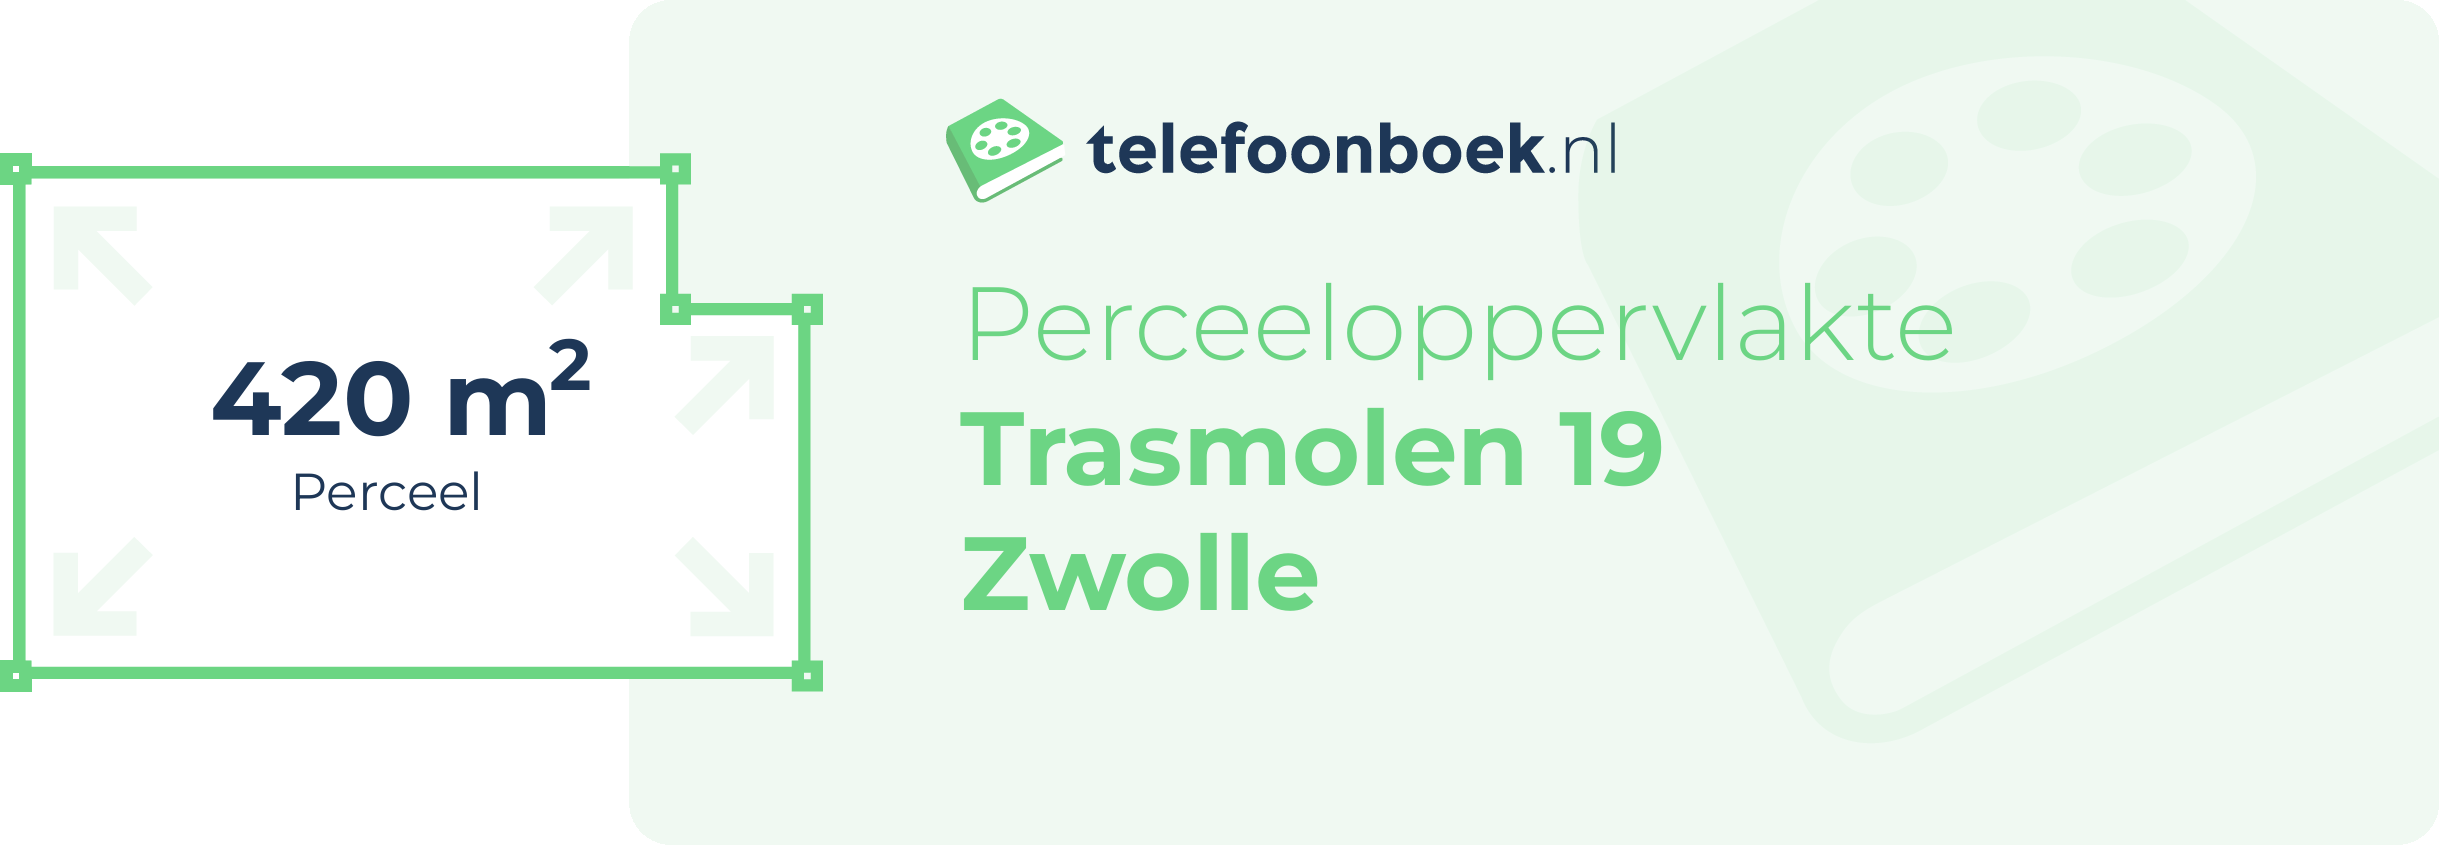 Perceeloppervlakte Trasmolen 19 Zwolle